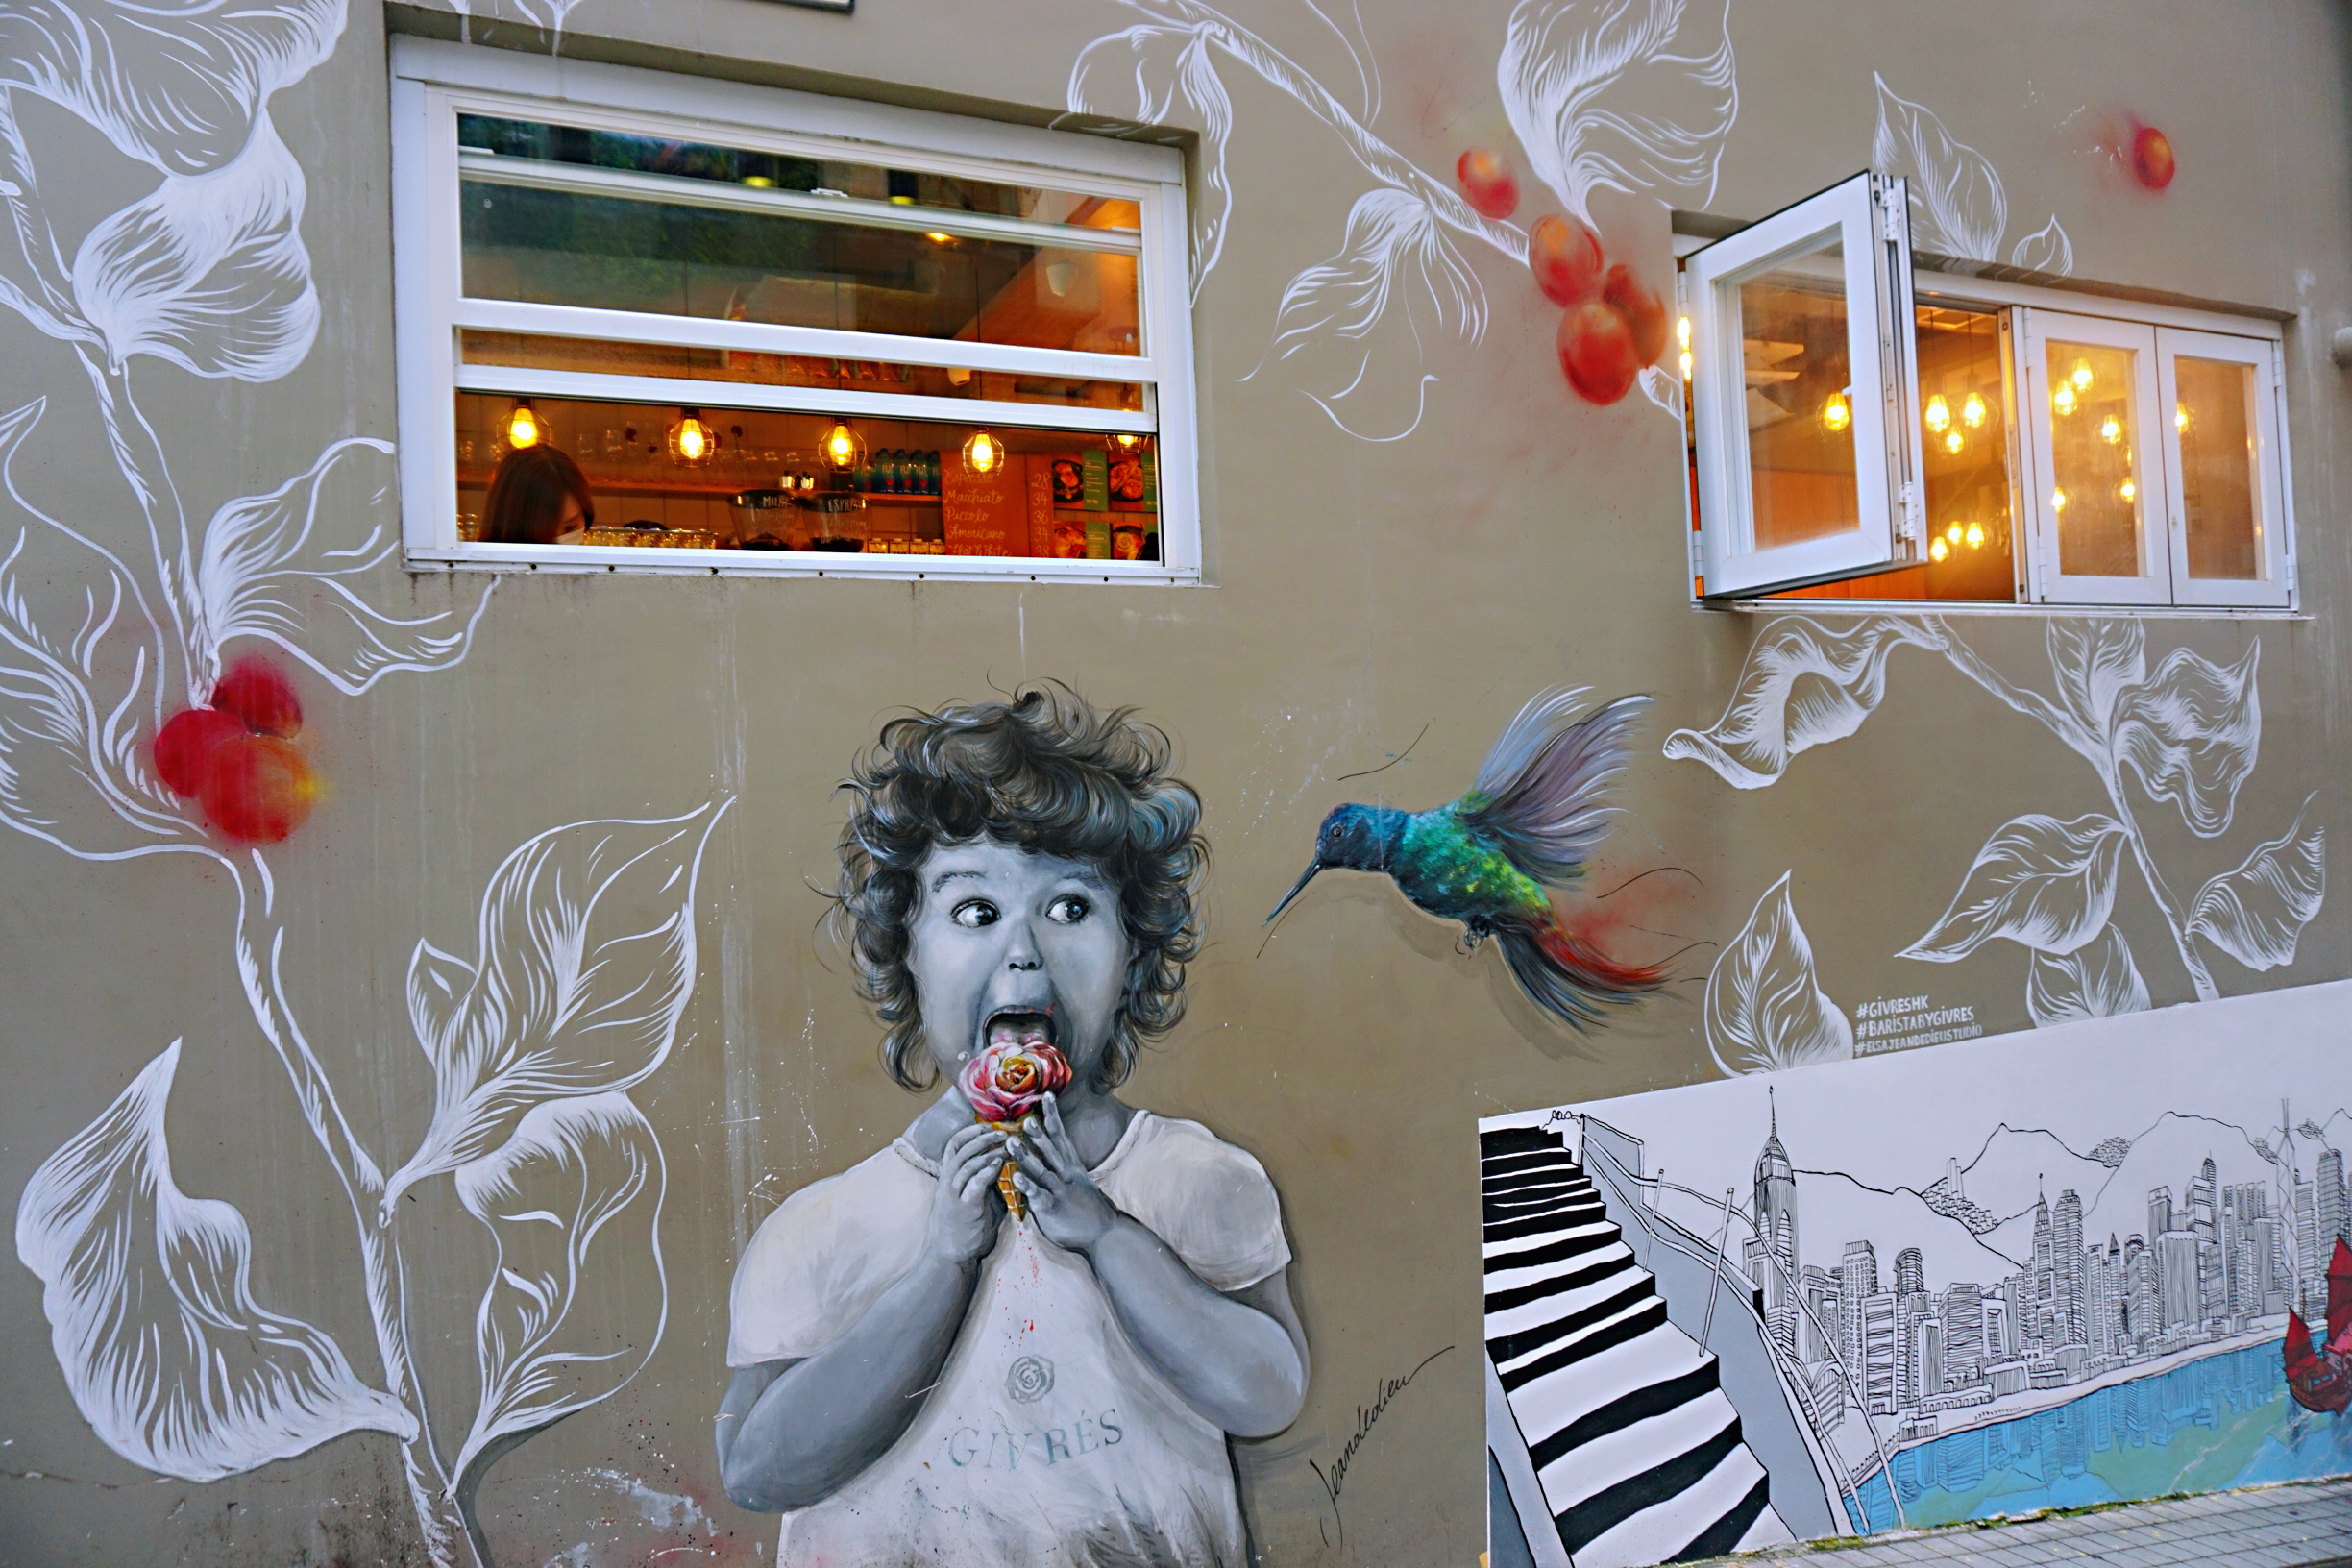 中環巷弄隨處可見餐廳外妙趣橫生的壁畫。